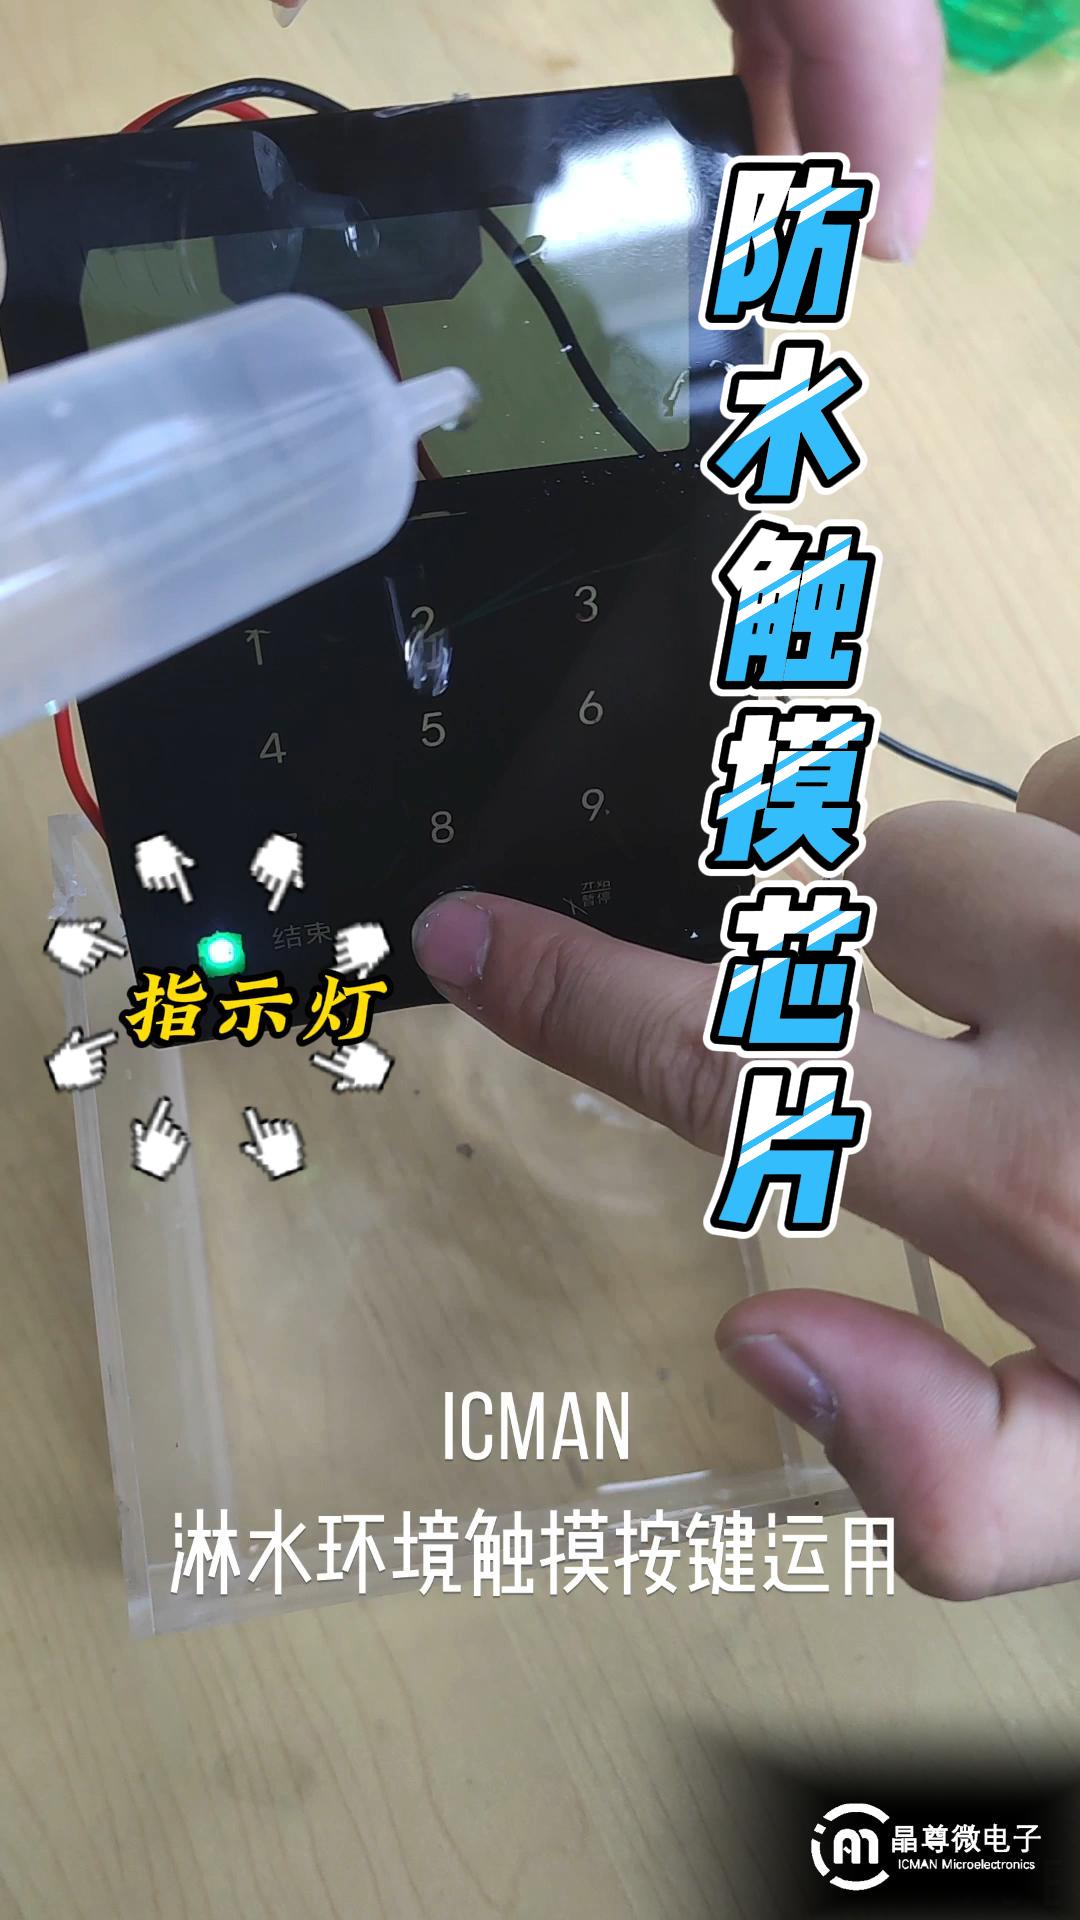 ICMAN触摸芯片淋水环境下应用演示# 触摸芯片#电路知识 